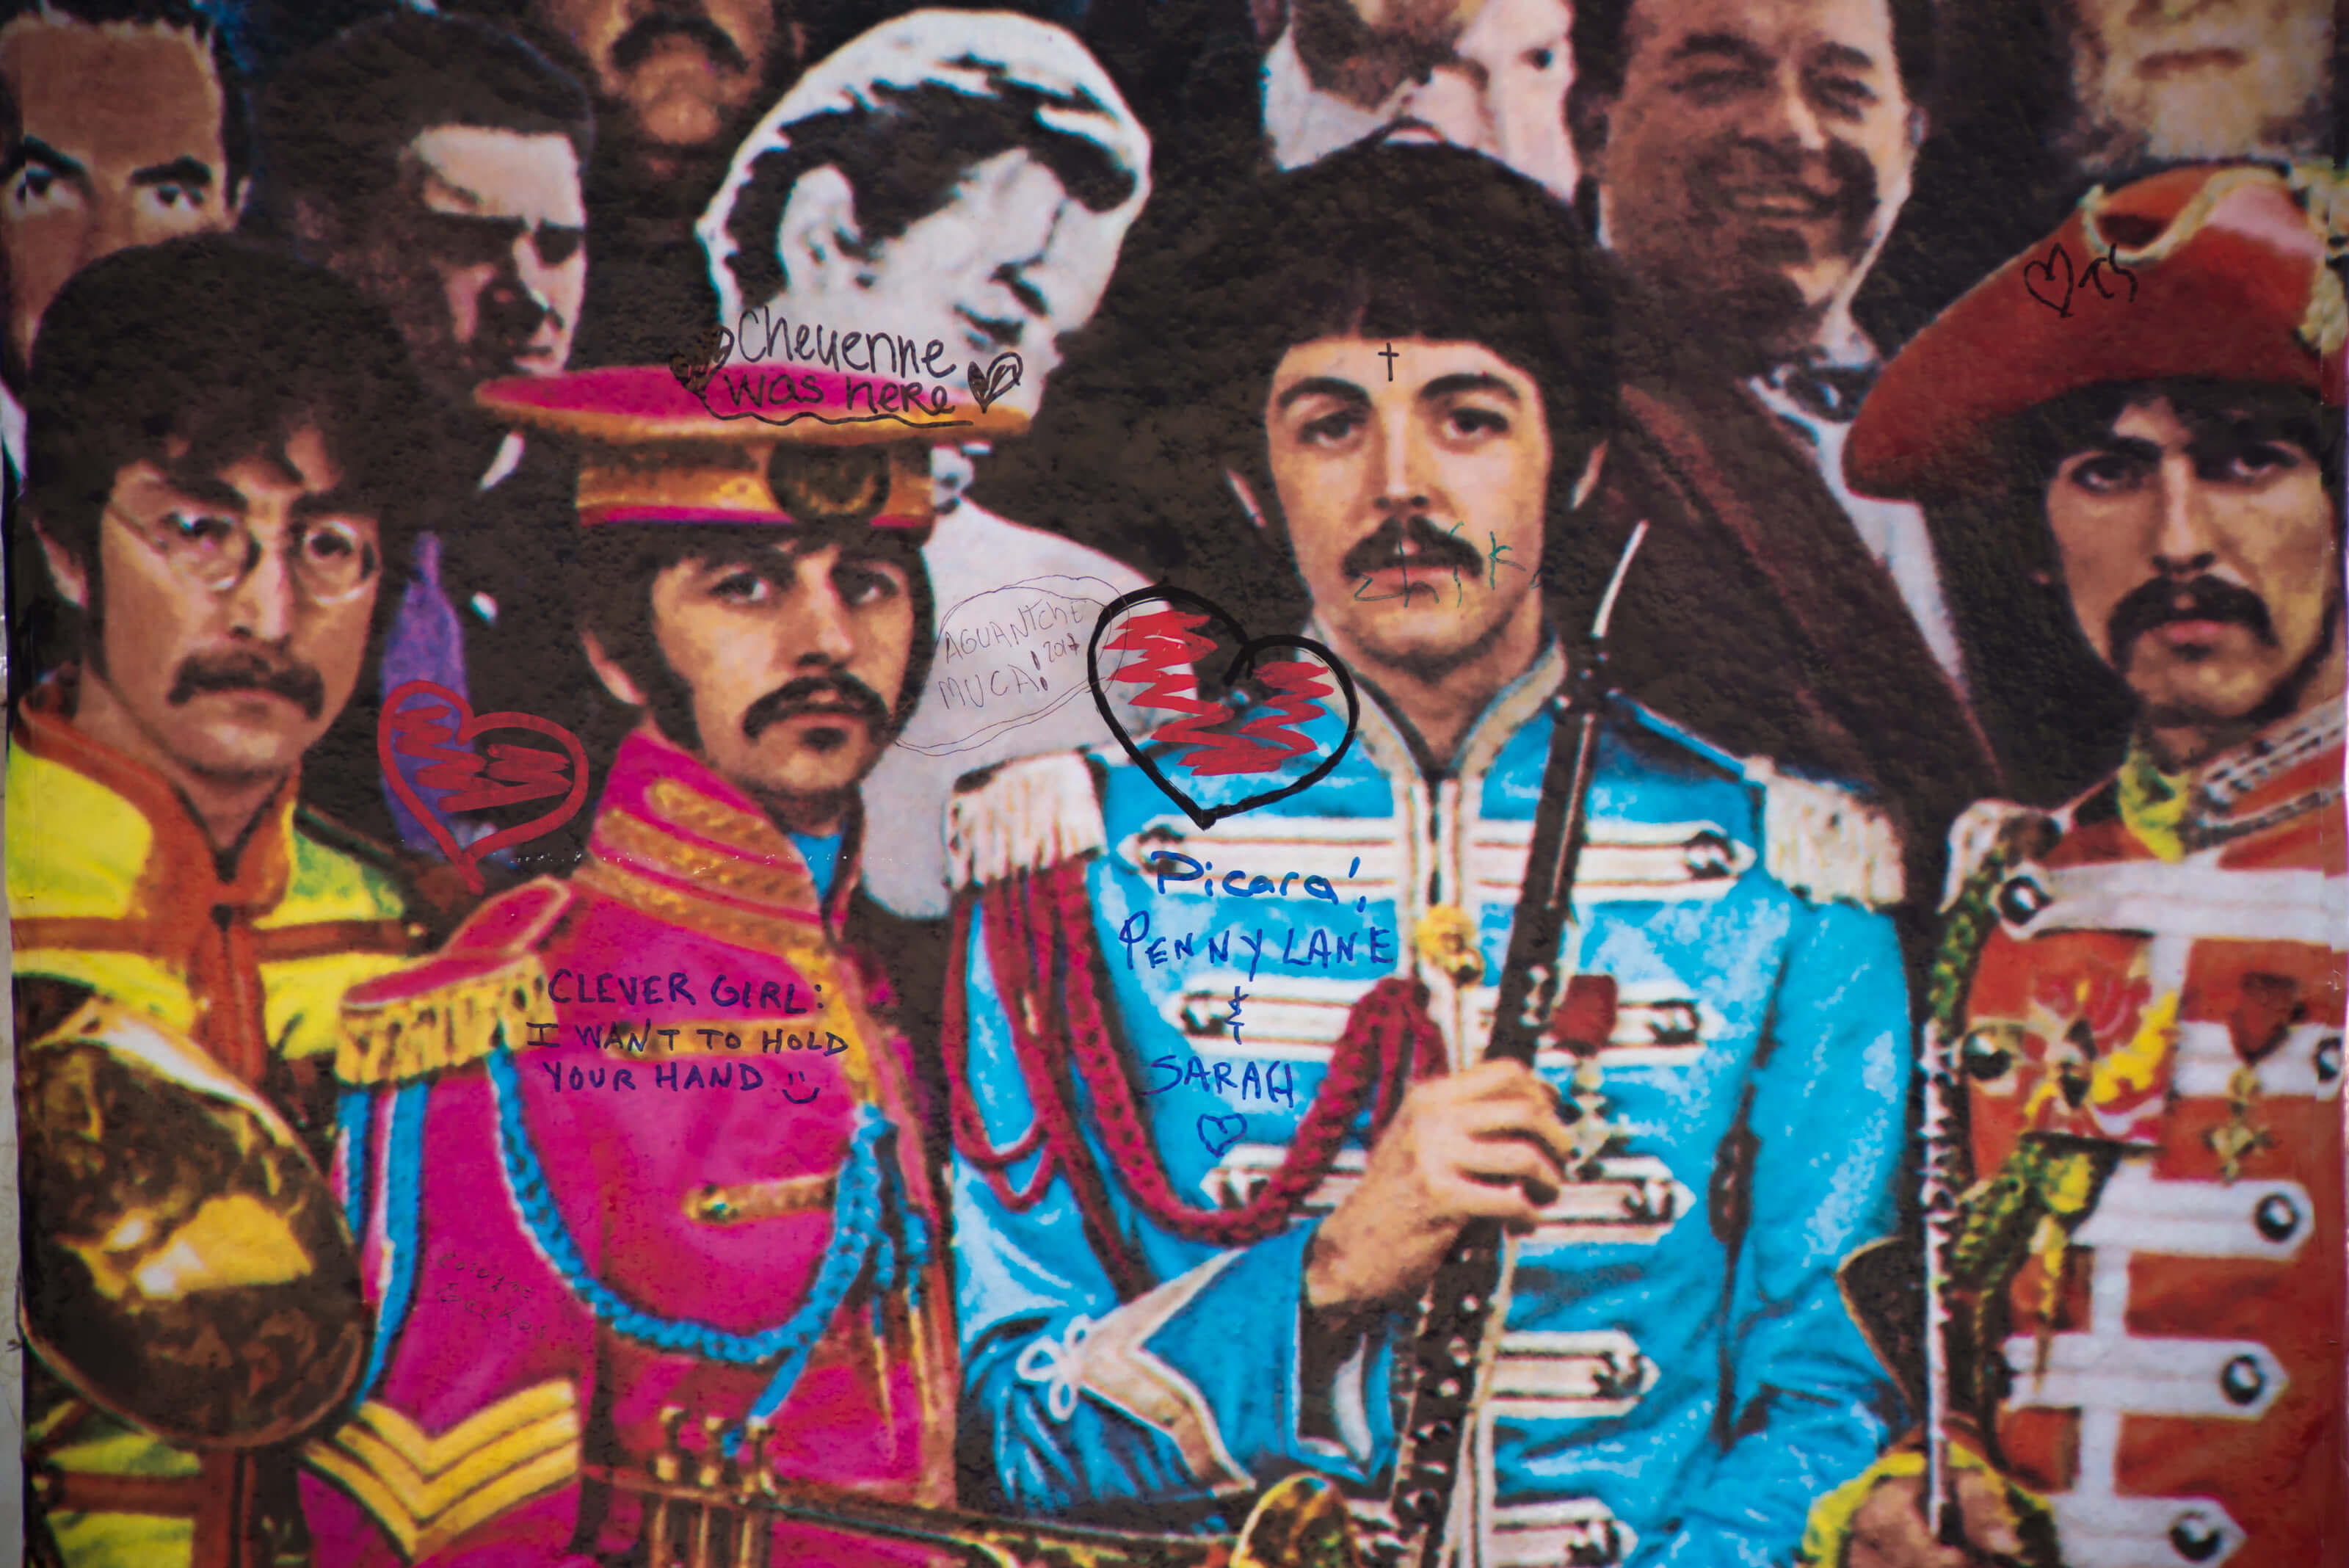 John Lennon ha detto che i Beatles 'Sgt. Pepper' 'Non va da nessuna parte'